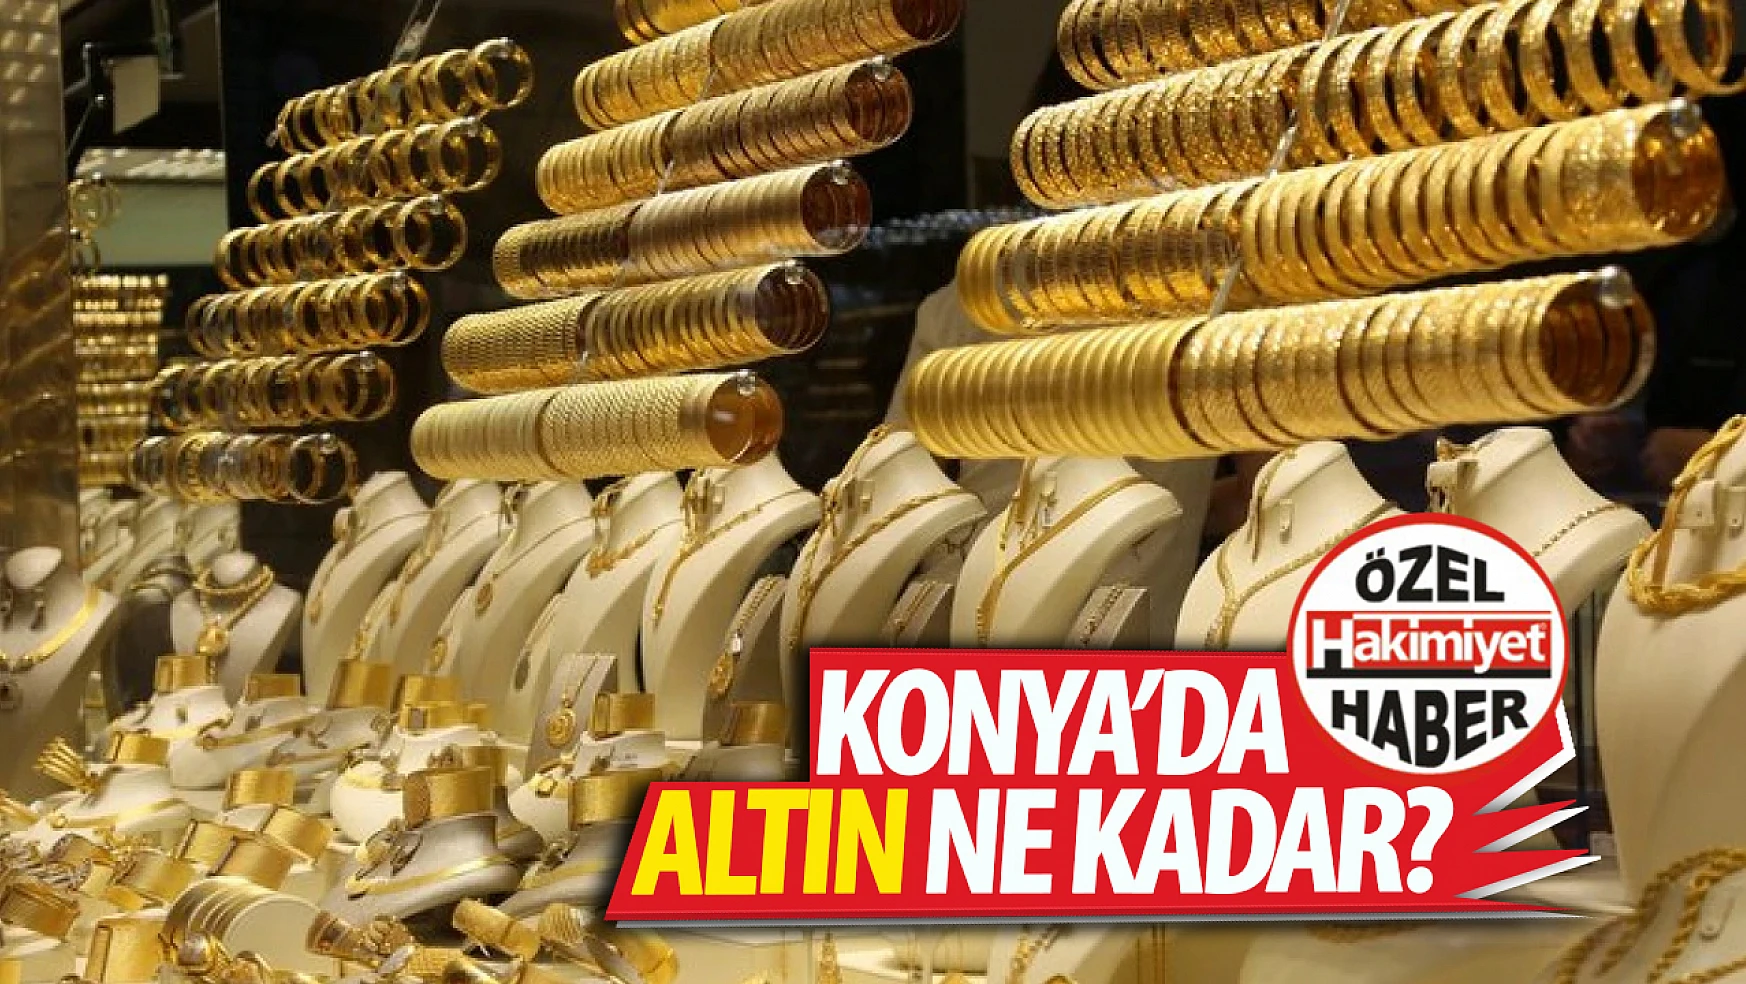 Konya'da bugün altın piyasası ne durumda? Yükseliş ya da düşüş var mı? 